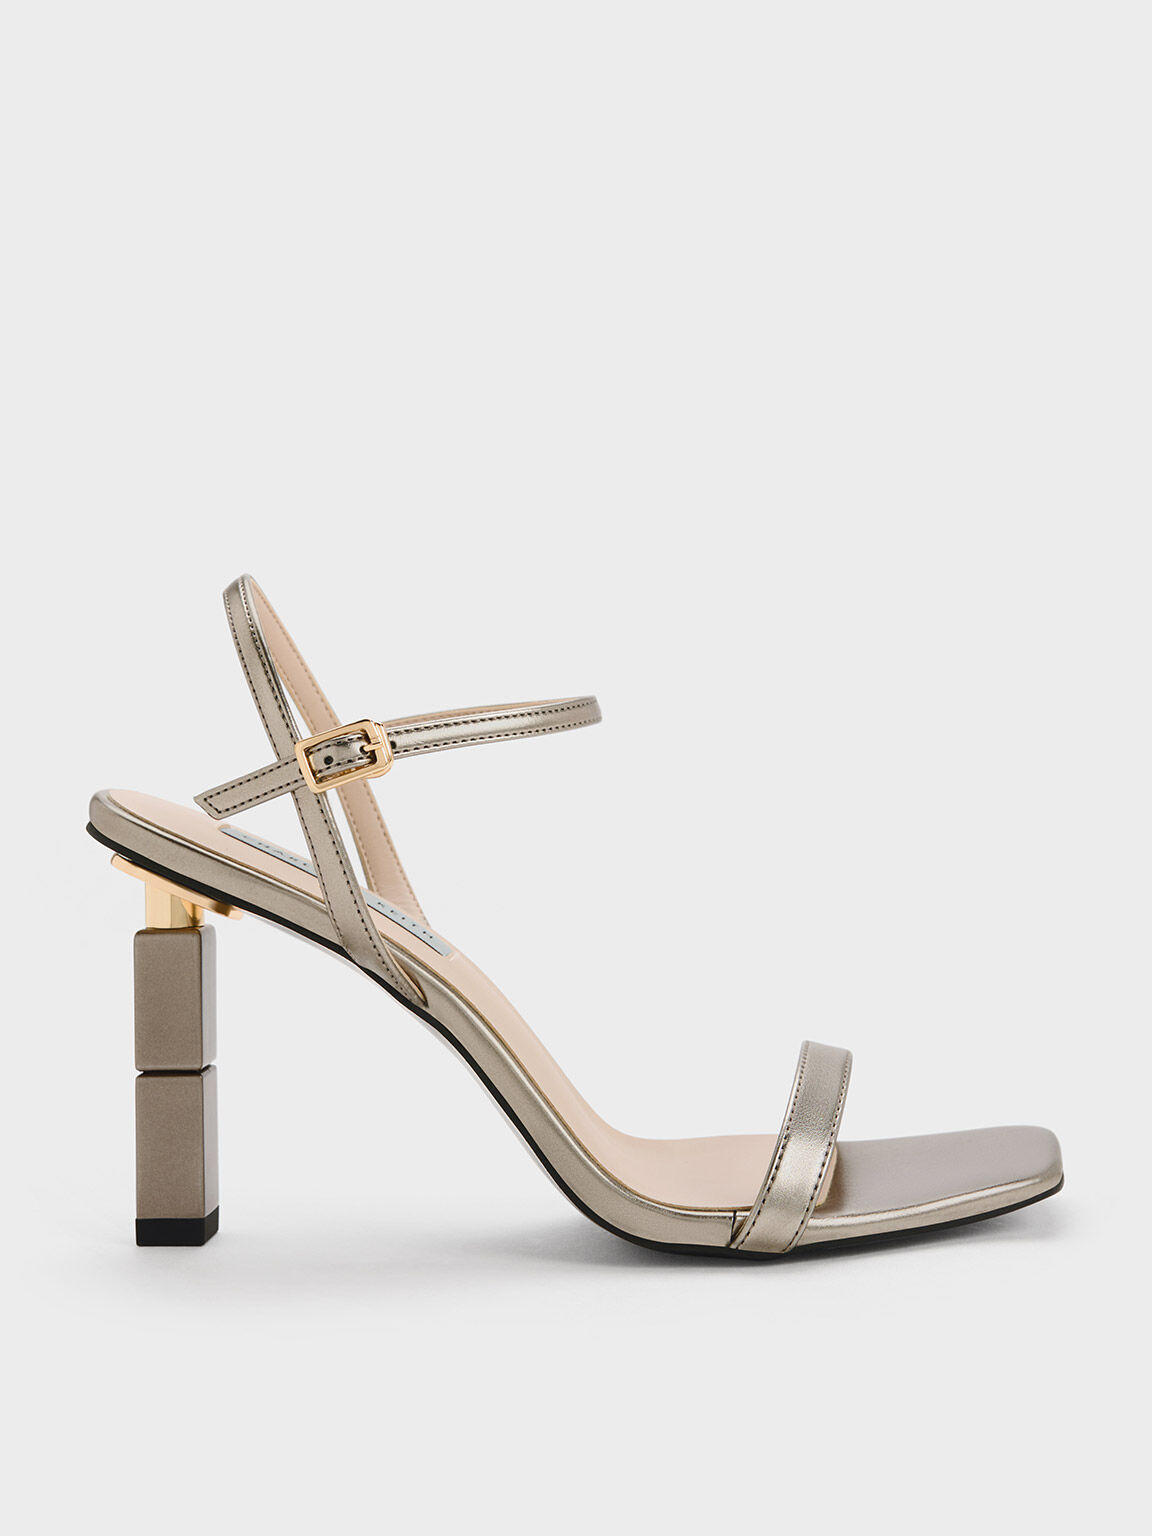 Sandal Sculptural Heel Metallic, Pewter, hi-res